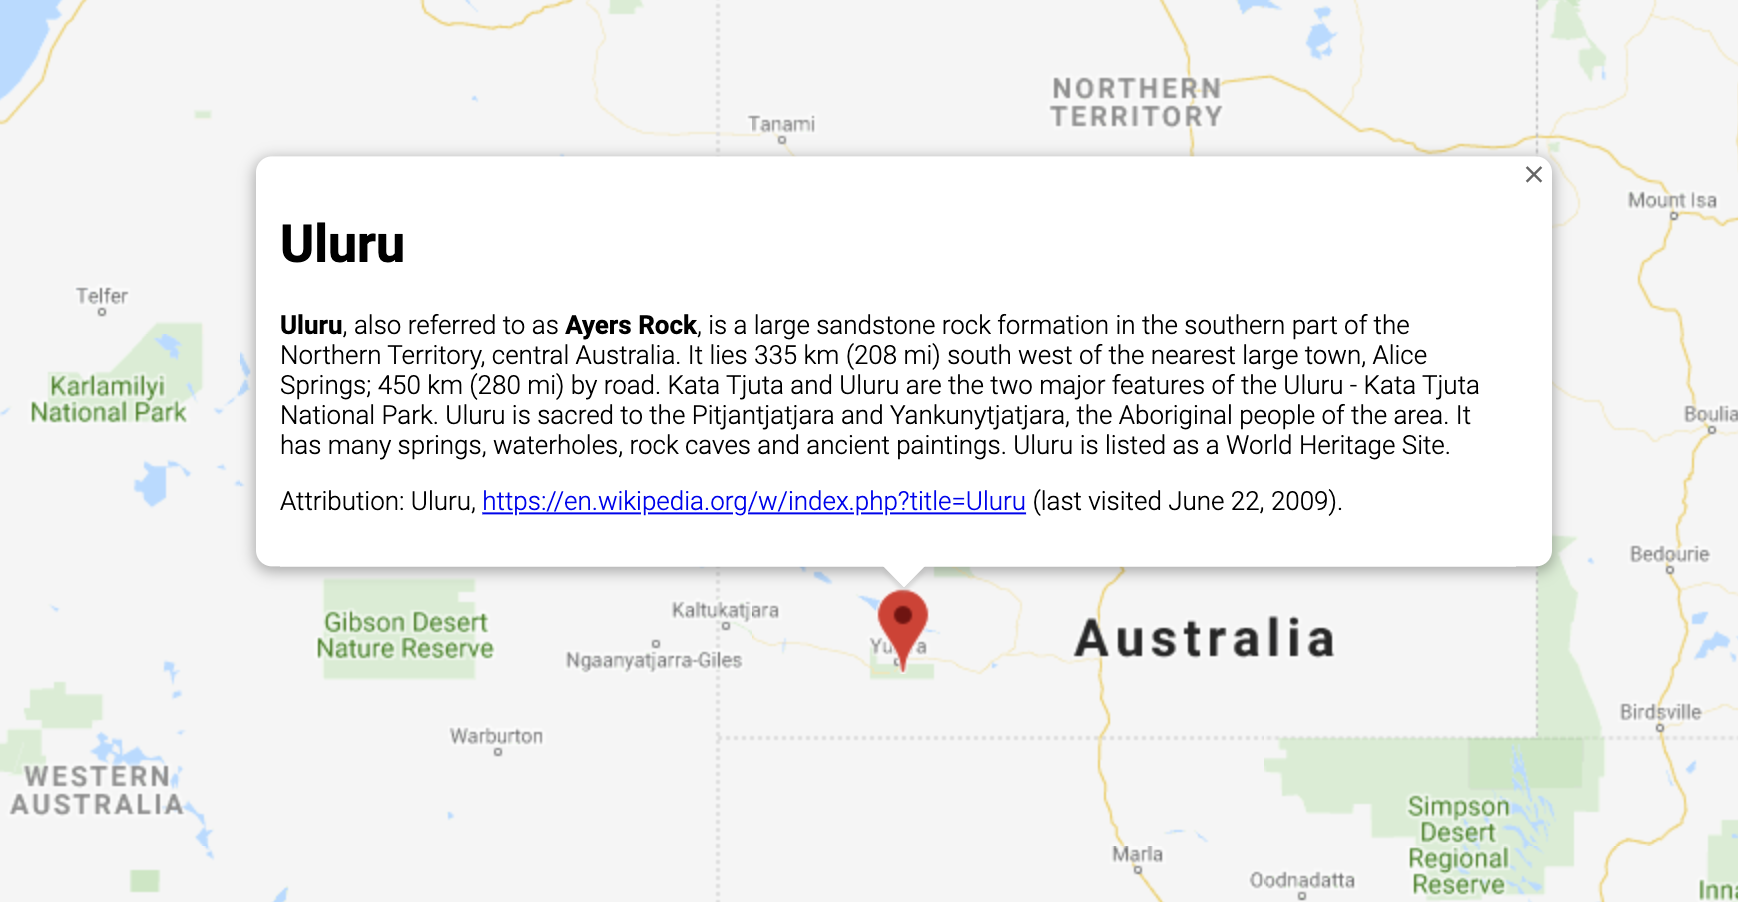 Okno informacyjne wyświetlające informacje o lokalizacji w Australii.